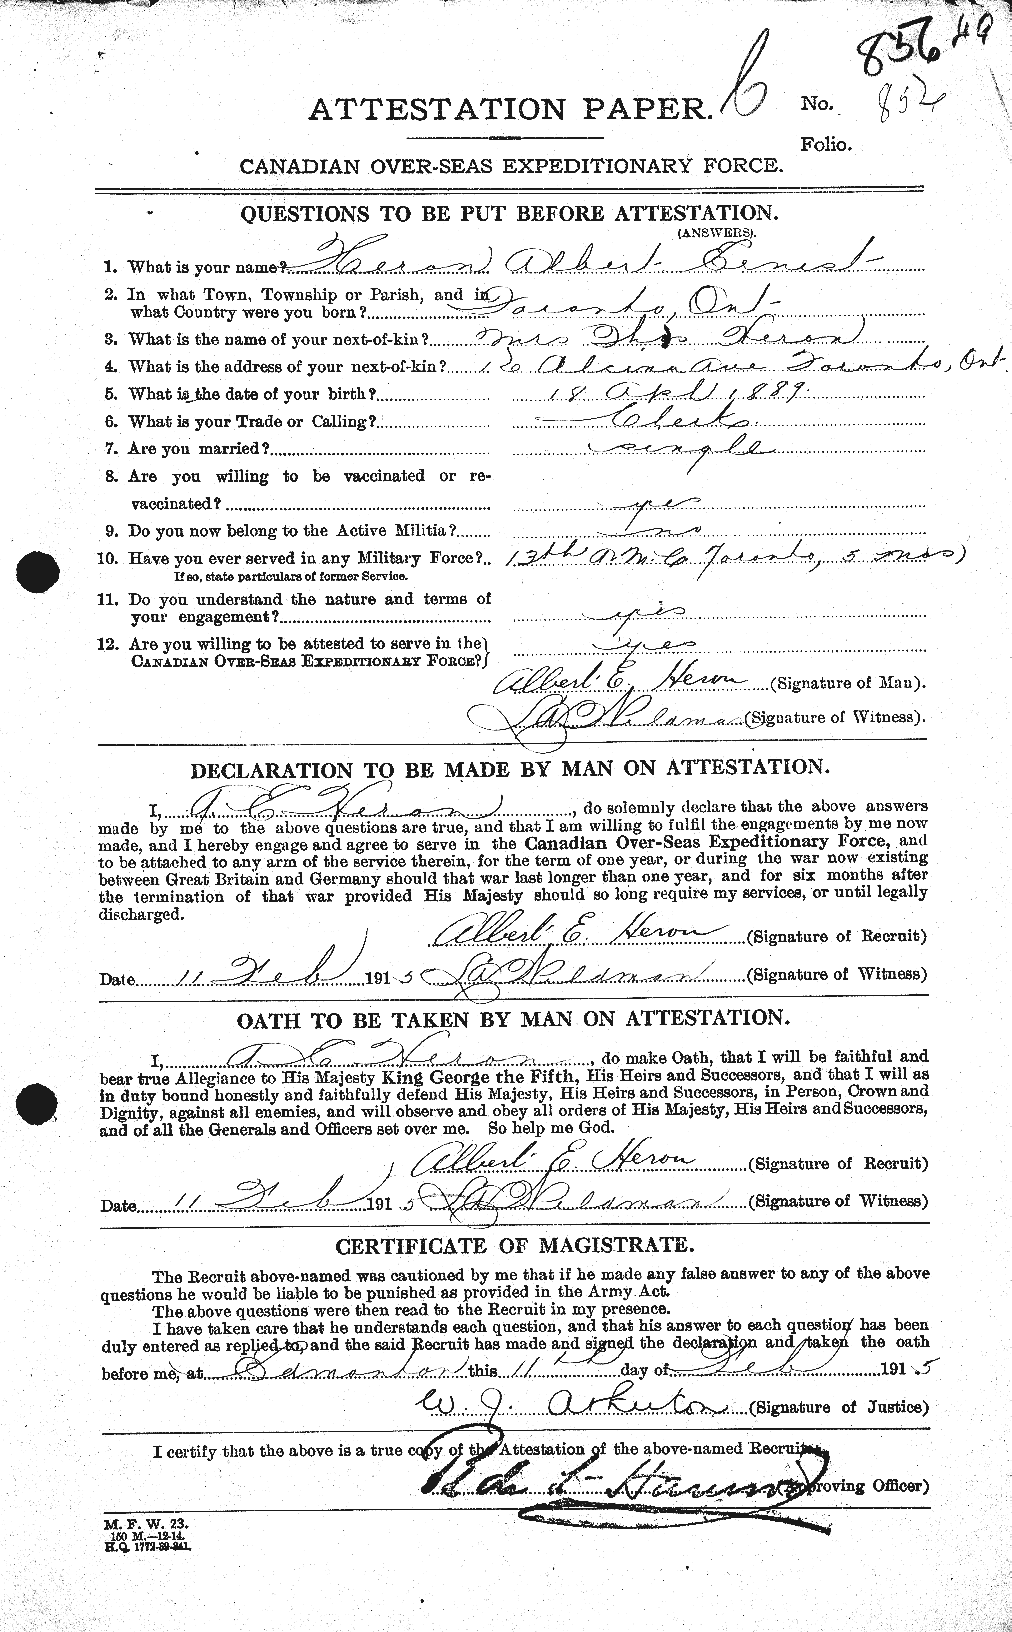 Dossiers du Personnel de la Première Guerre mondiale - CEC 388435a